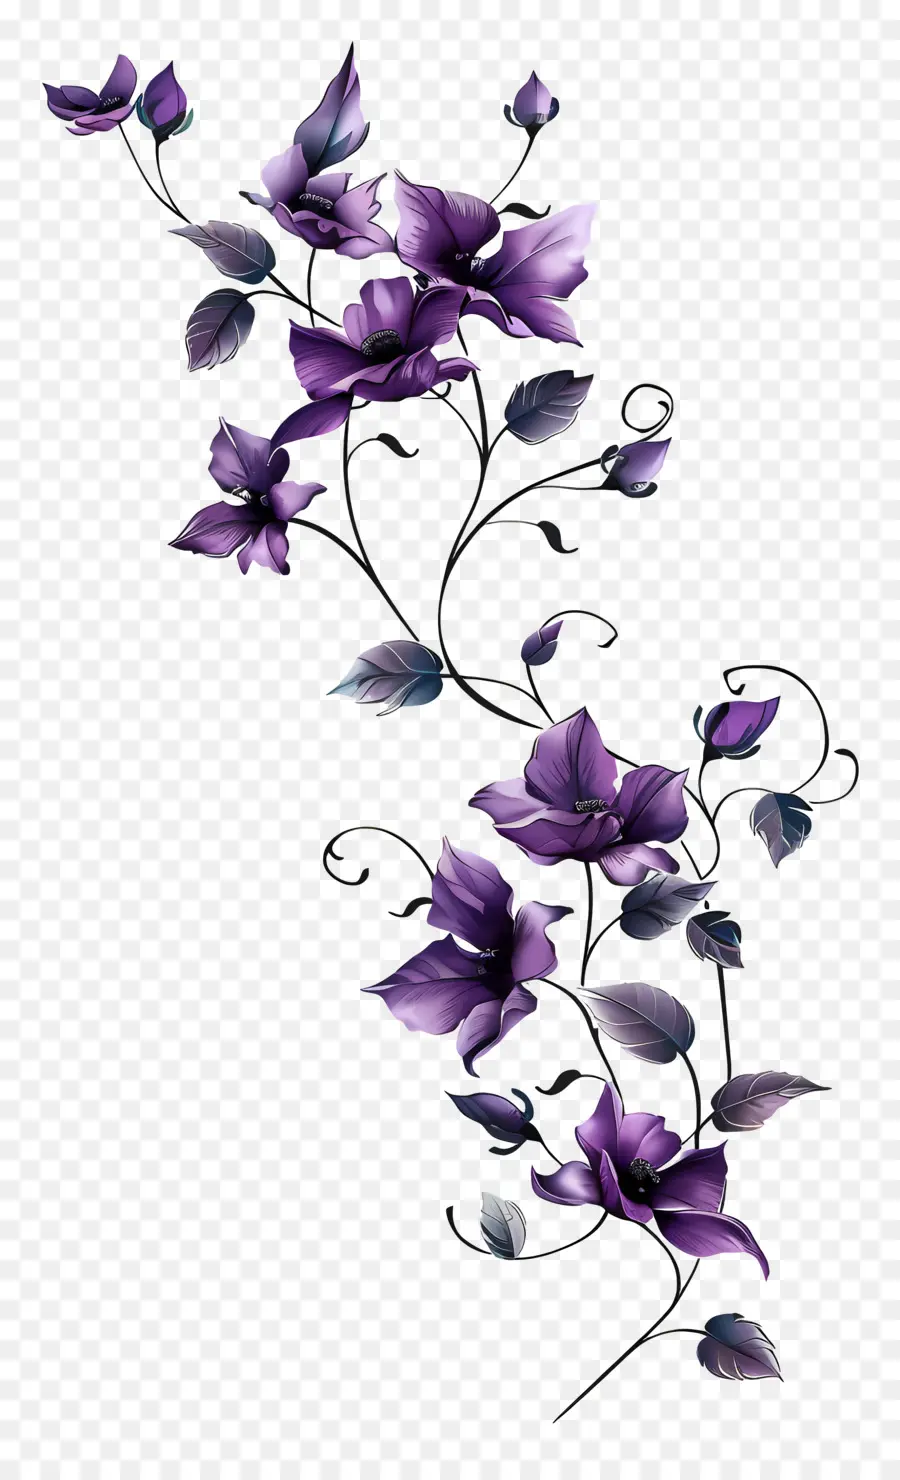 Vine viola Vine Fiori viola BOUQUET Schema turbinante a forma di cuore petali - Elegante bouquet di fiori viola a forma di cuore